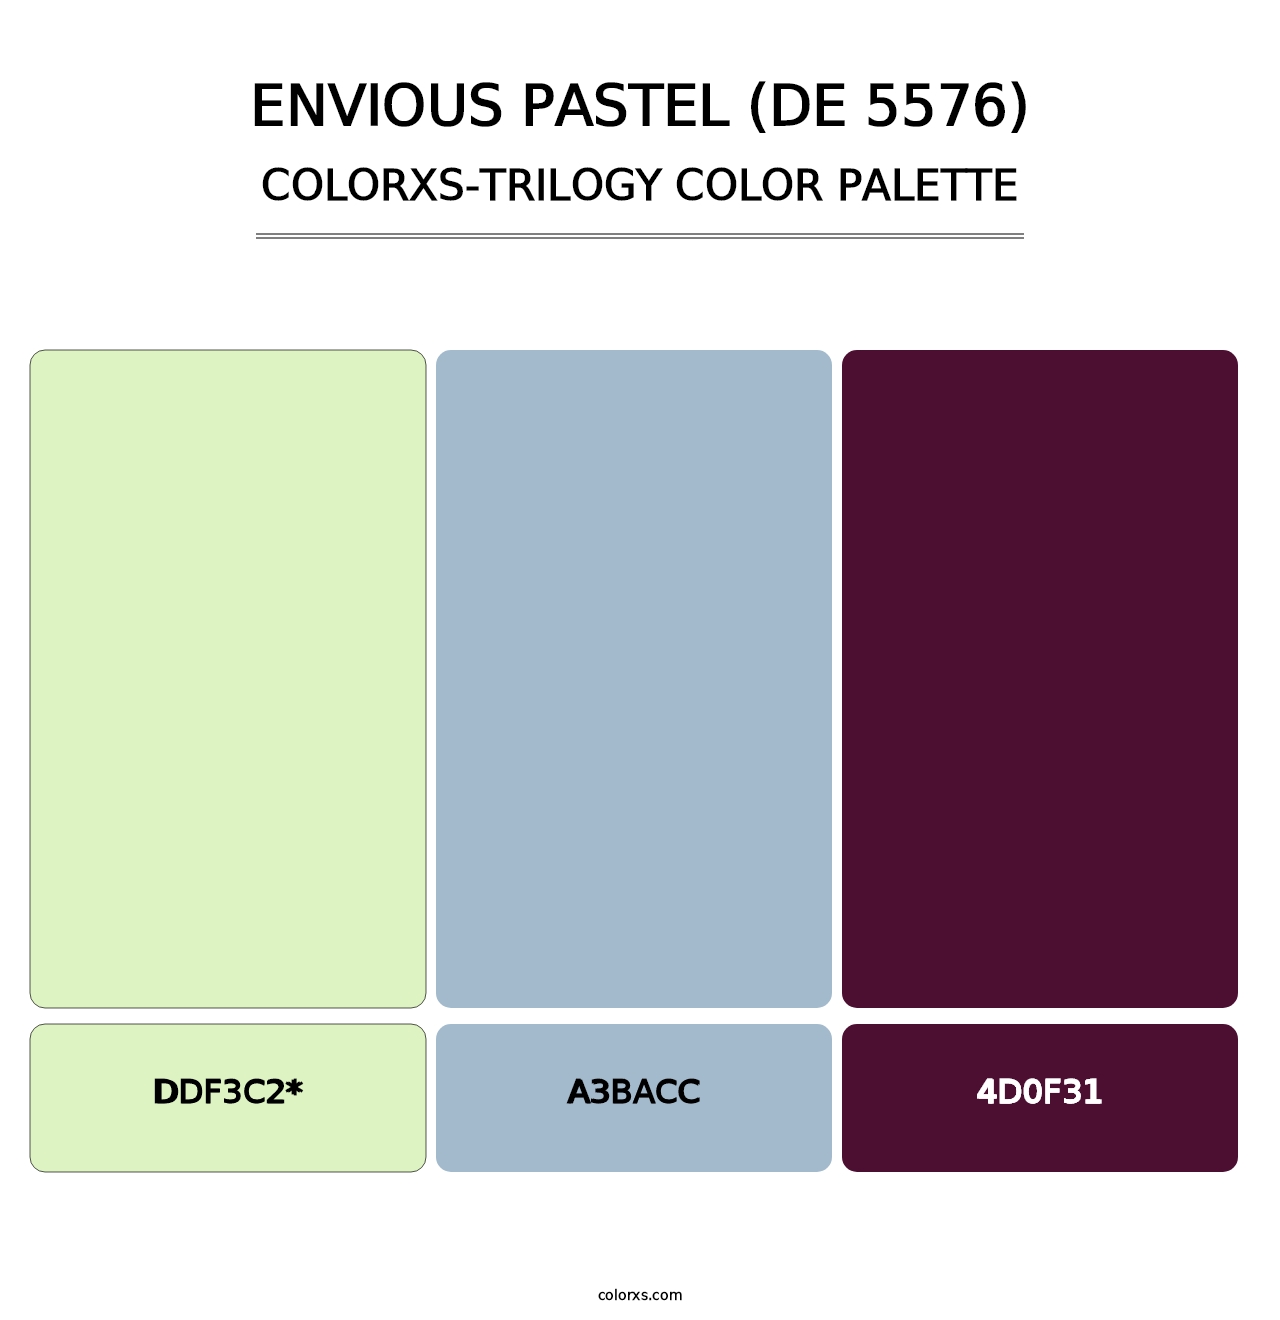 Envious Pastel (DE 5576) - Colorxs Trilogy Palette